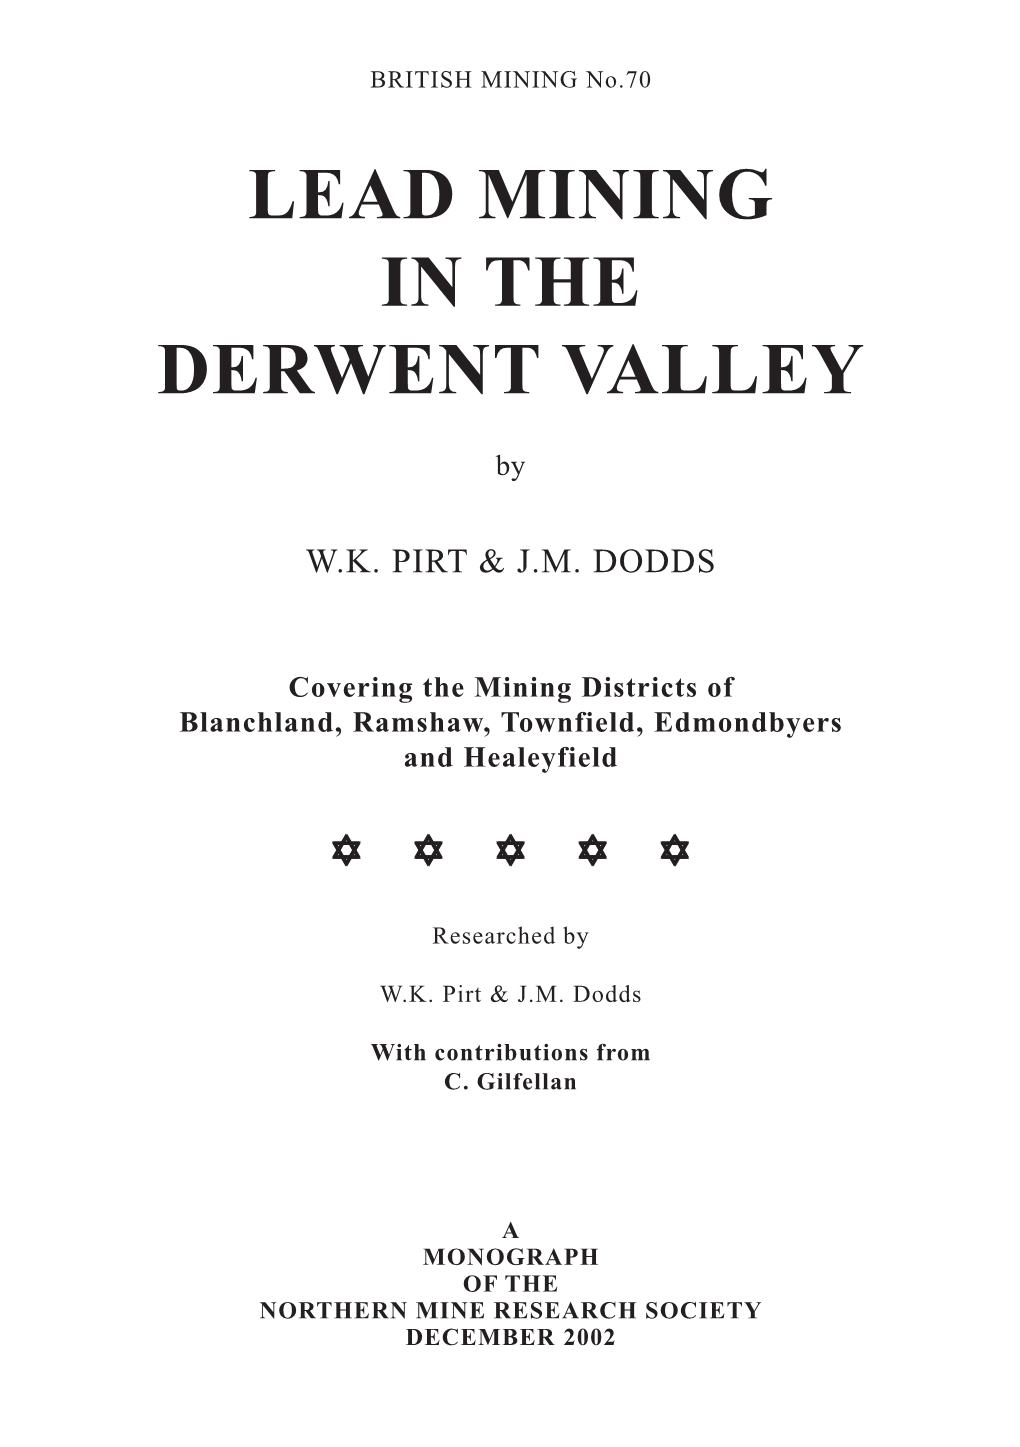 Lead Mining in the Derwent Valley